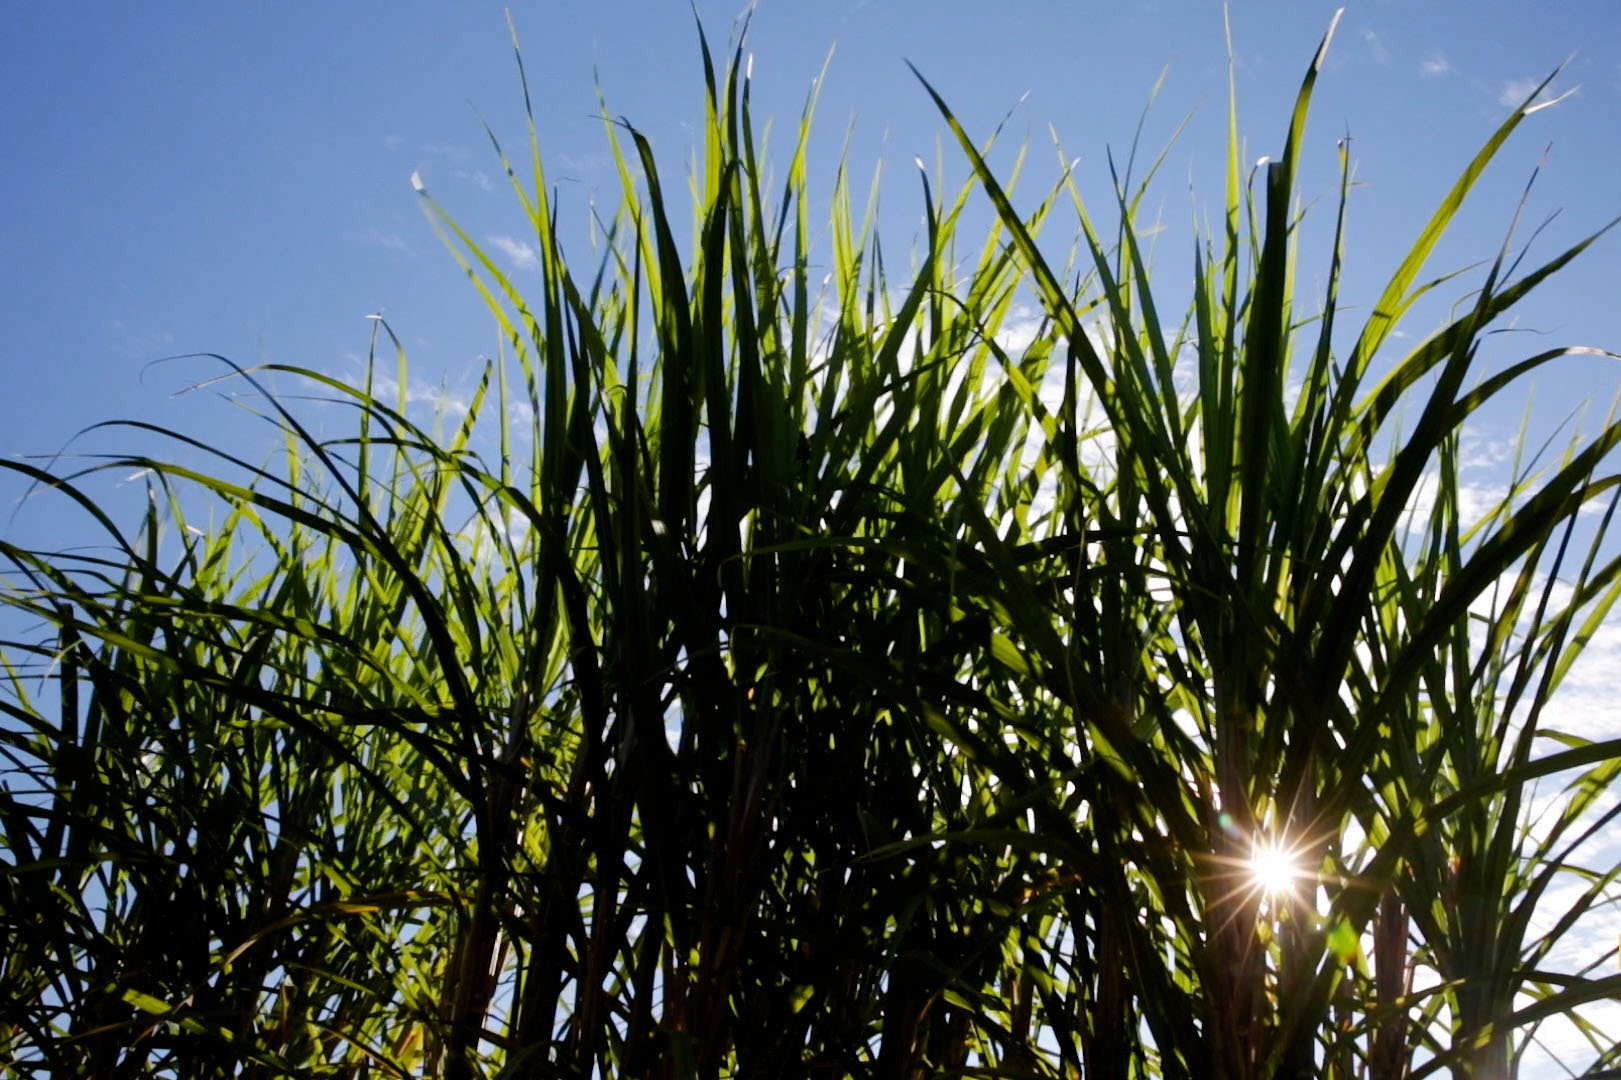 Sun shines through a stand of sugar cane